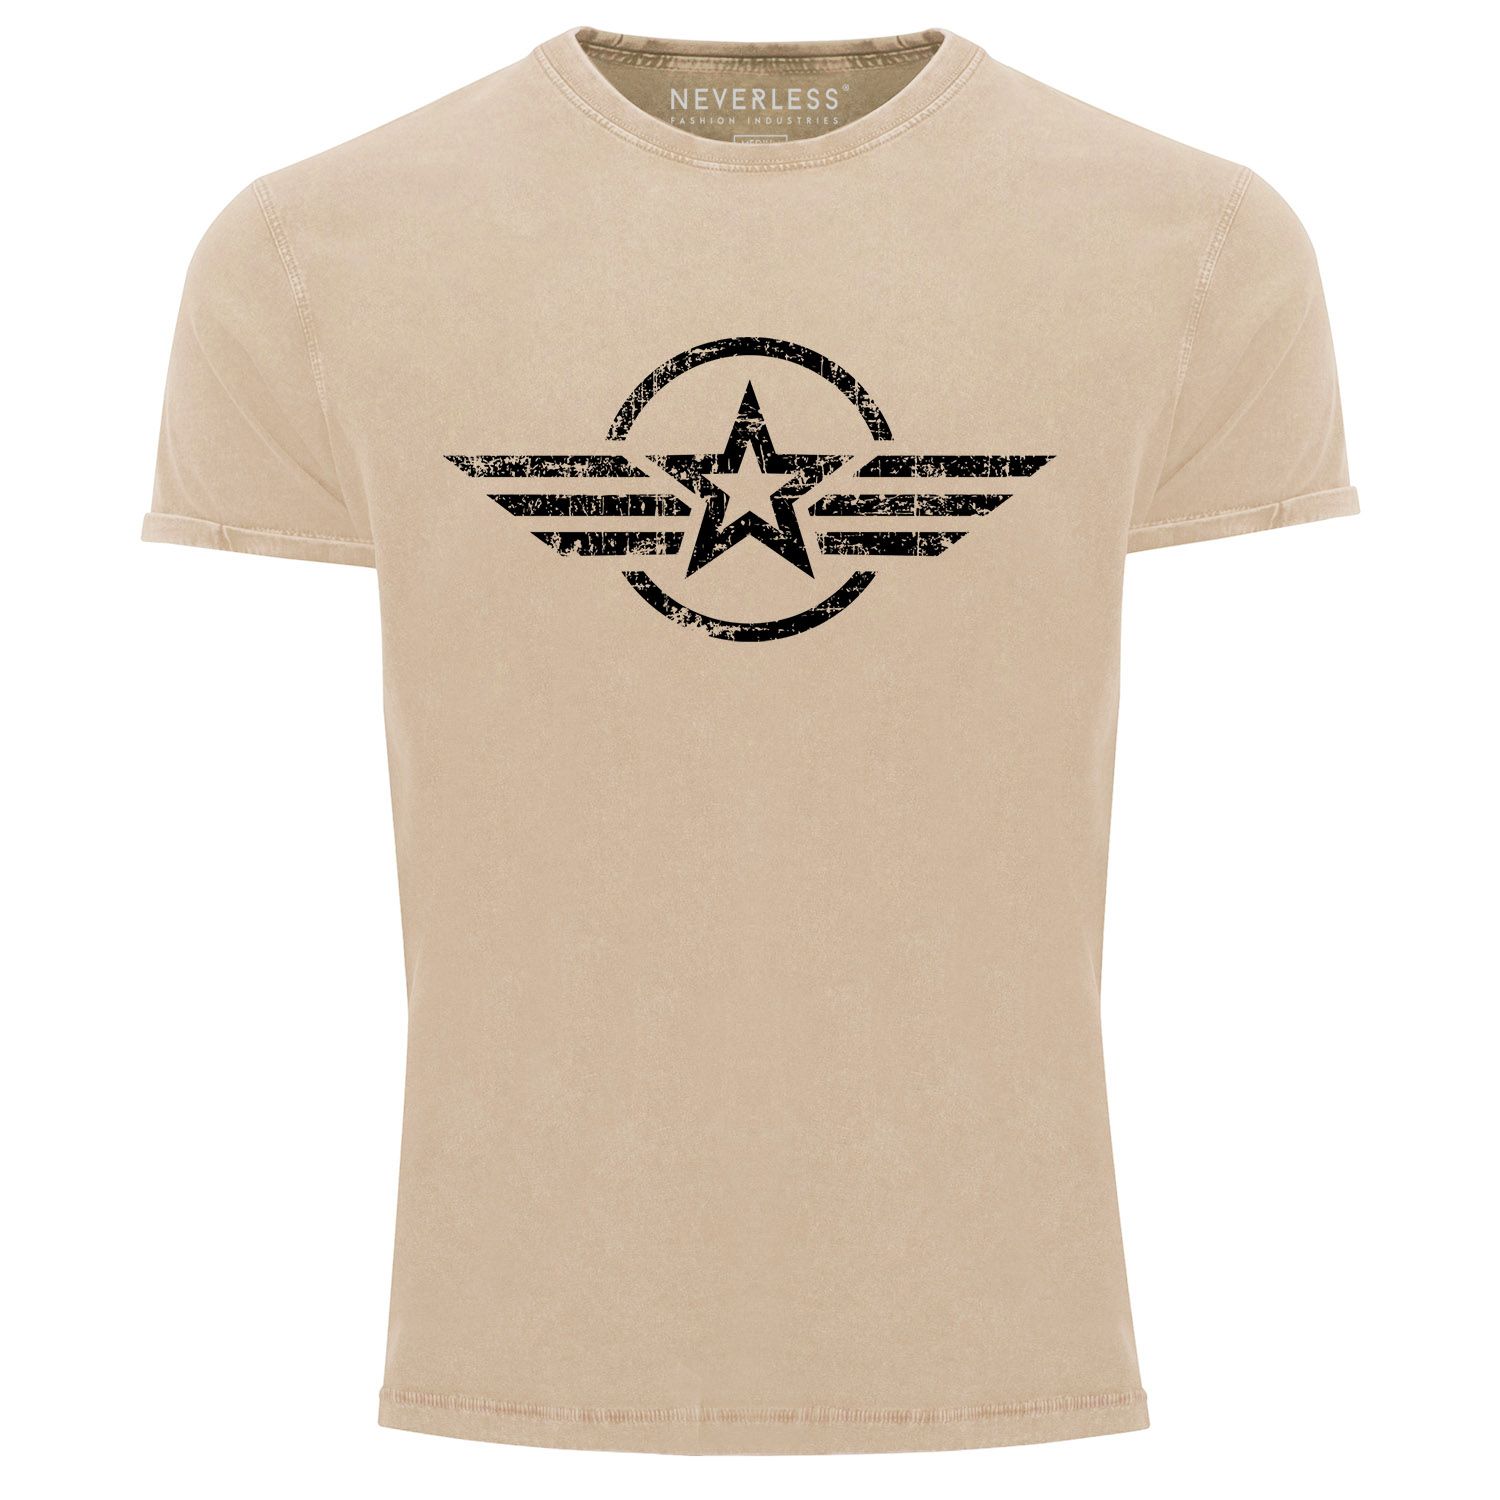 Herren Vintage Shirt Airforce Stern Army Military Aufdruck Printshirt T-Shirt Aufdruck Used Look Slim Fit Neverless®